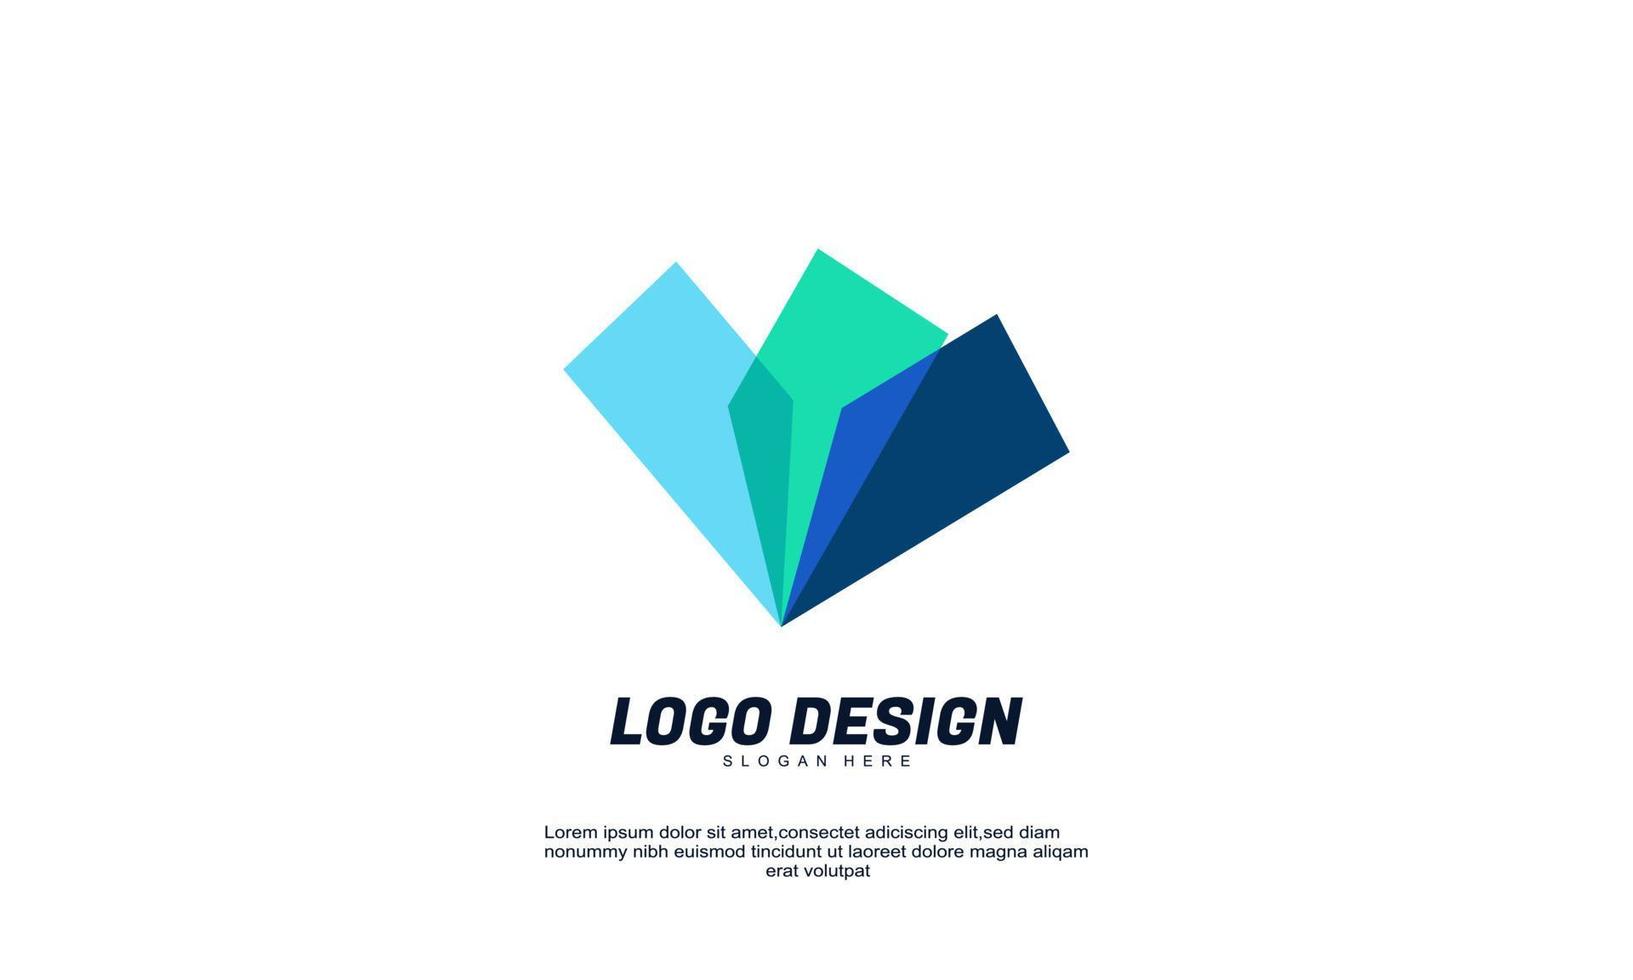 elemento di logo di design icona moderna creativa astratta con modello di biglietto da visita aziendale migliore per l'identità del marchio e il logo vettoriale